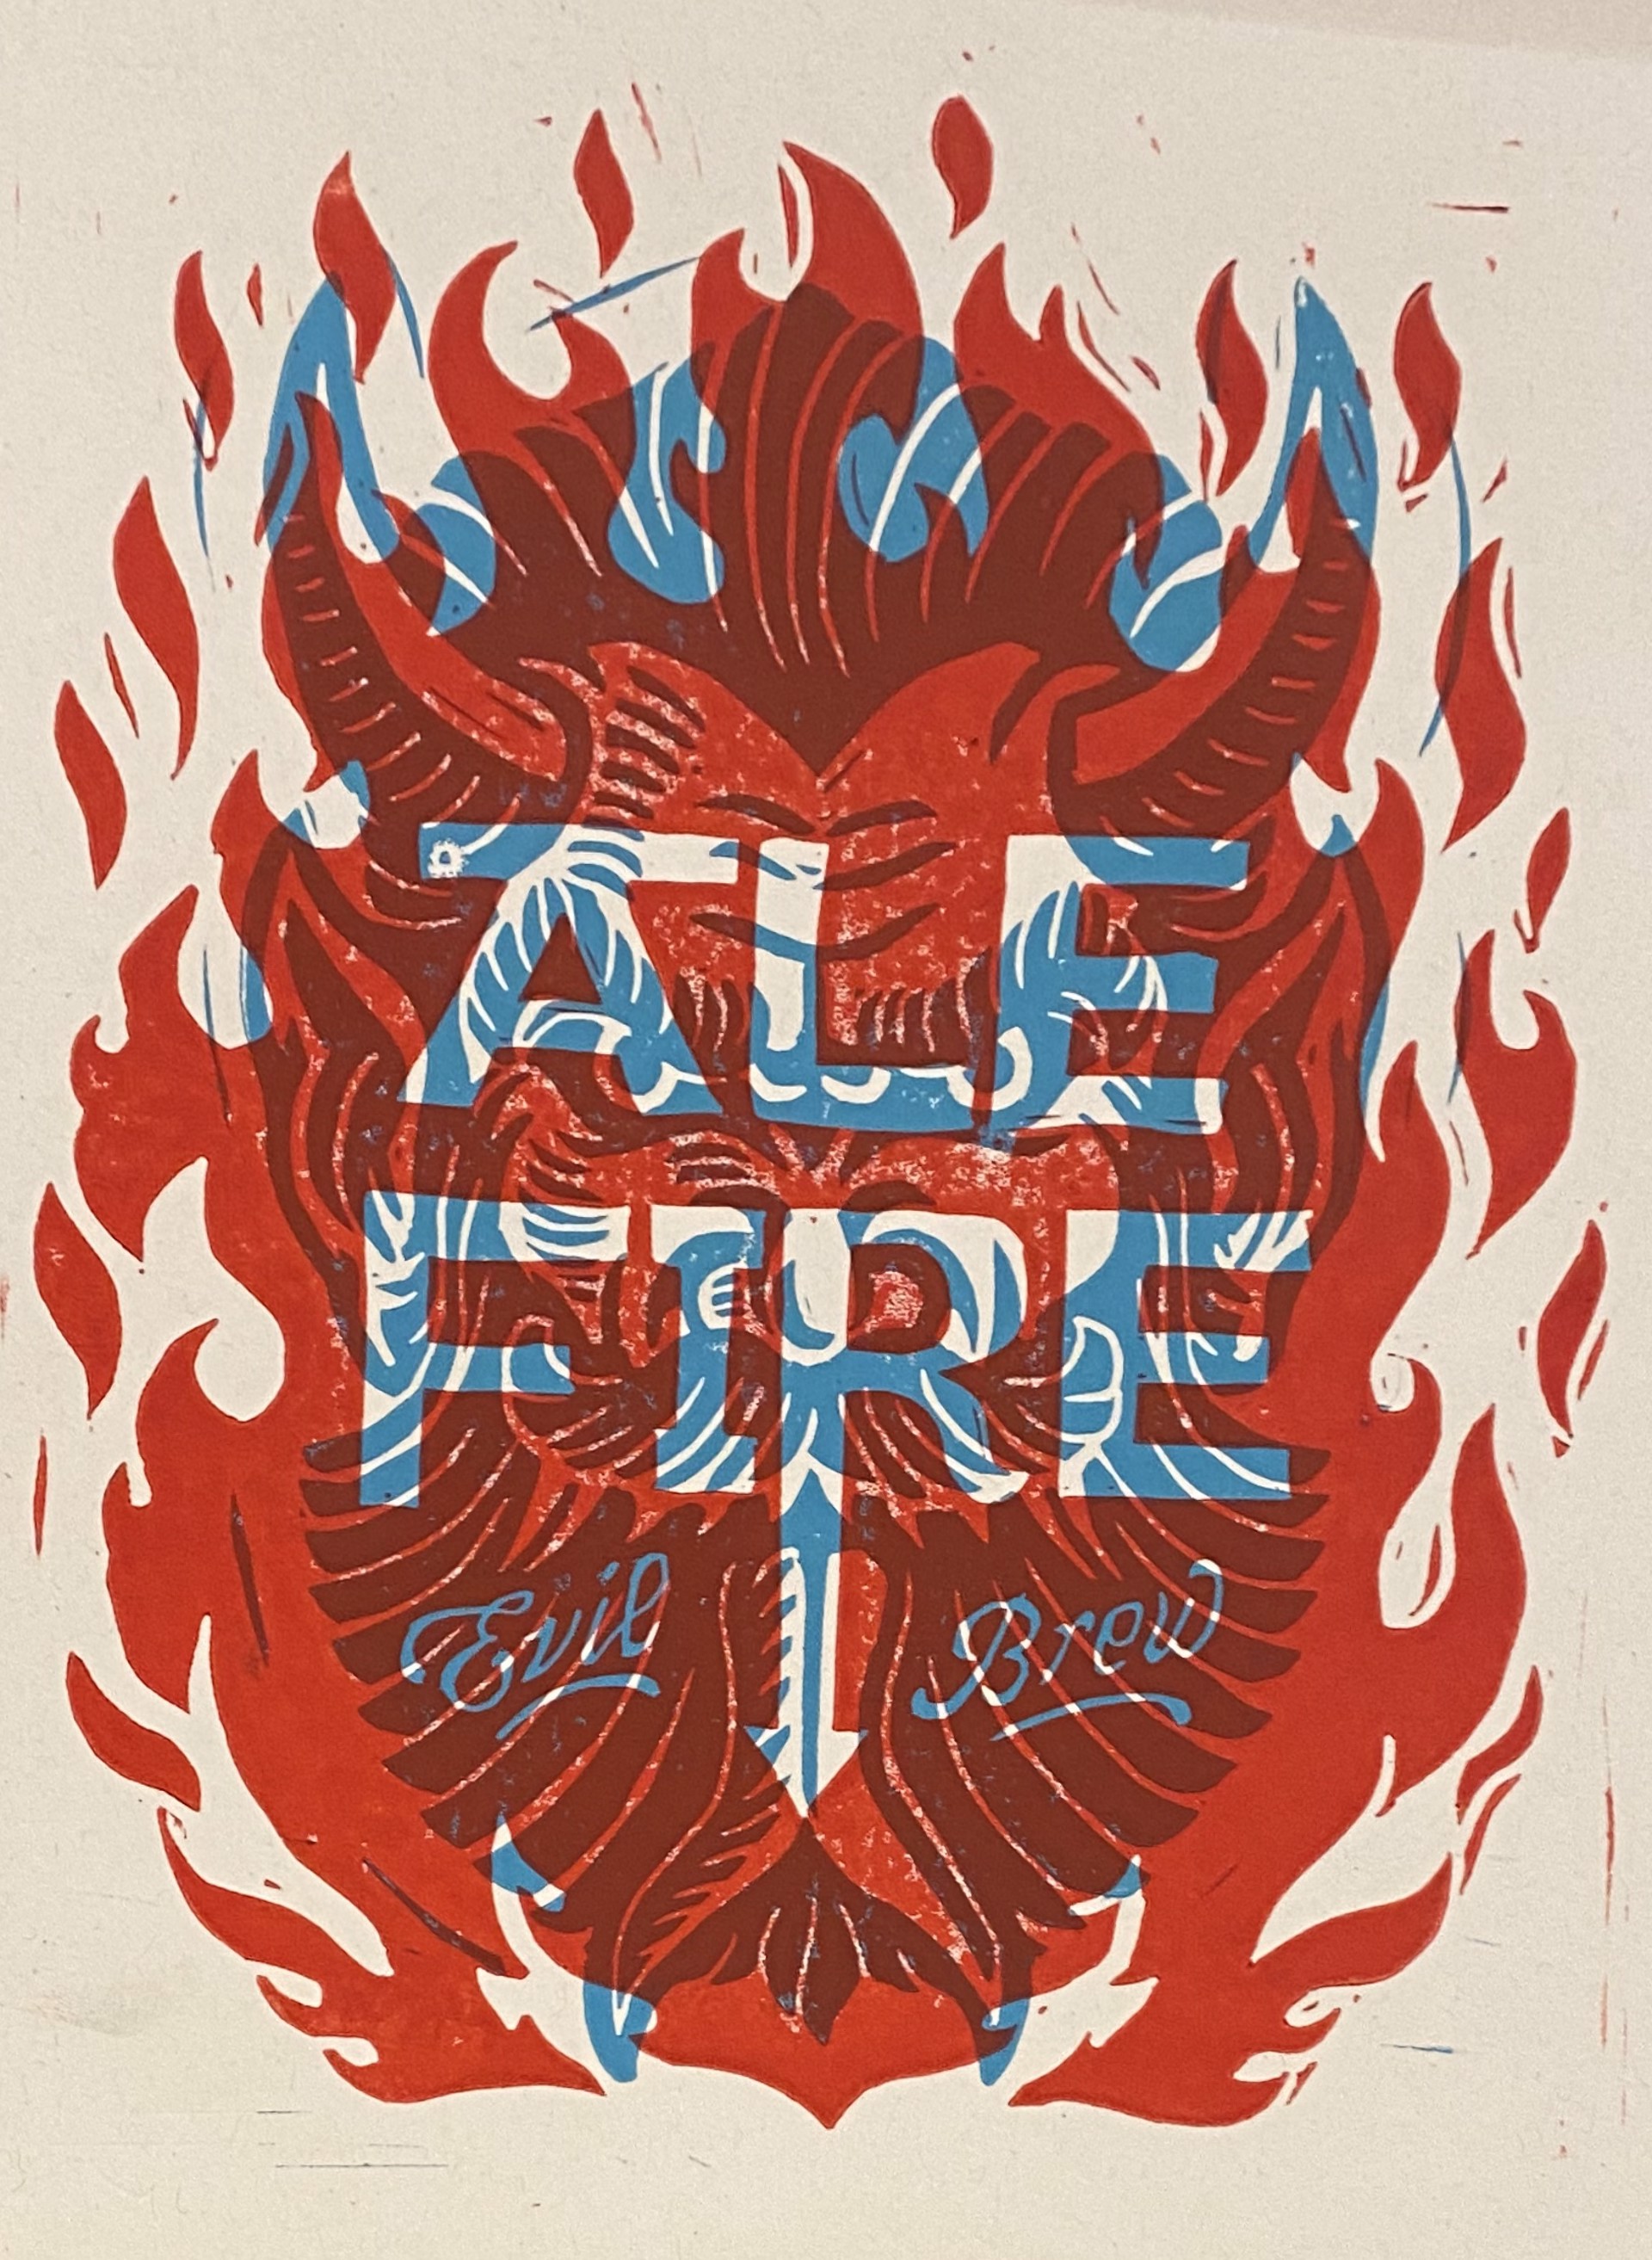 Ale Fire by Derrick Castle